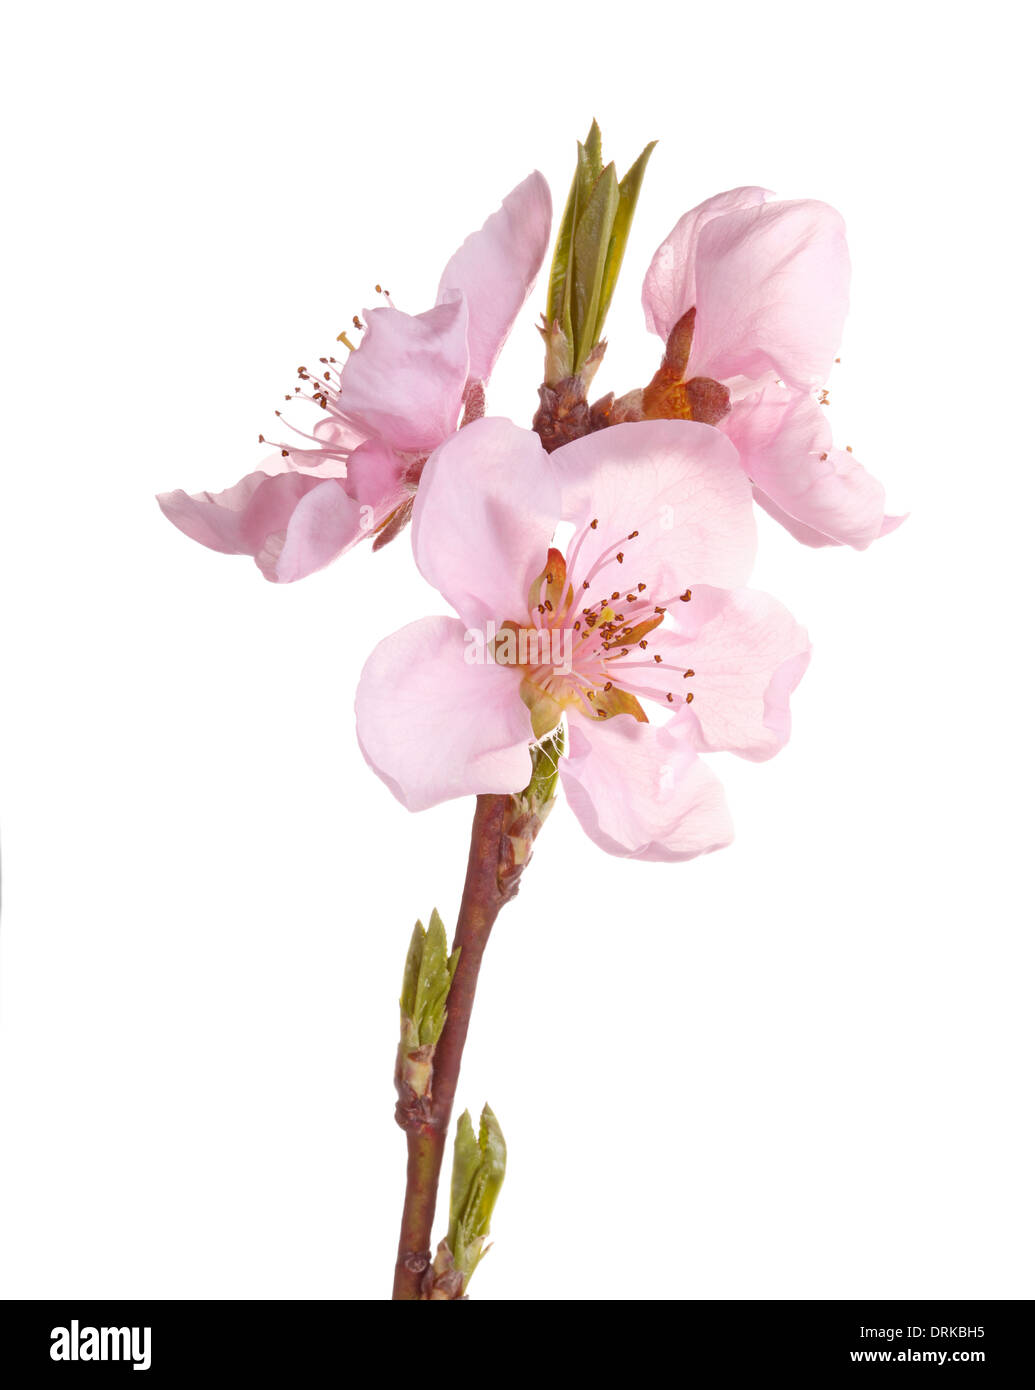 Stelo con fiori di colore rosa di pesche noci (Prunus persica varietà nucipersica) isolati contro uno sfondo bianco Foto Stock